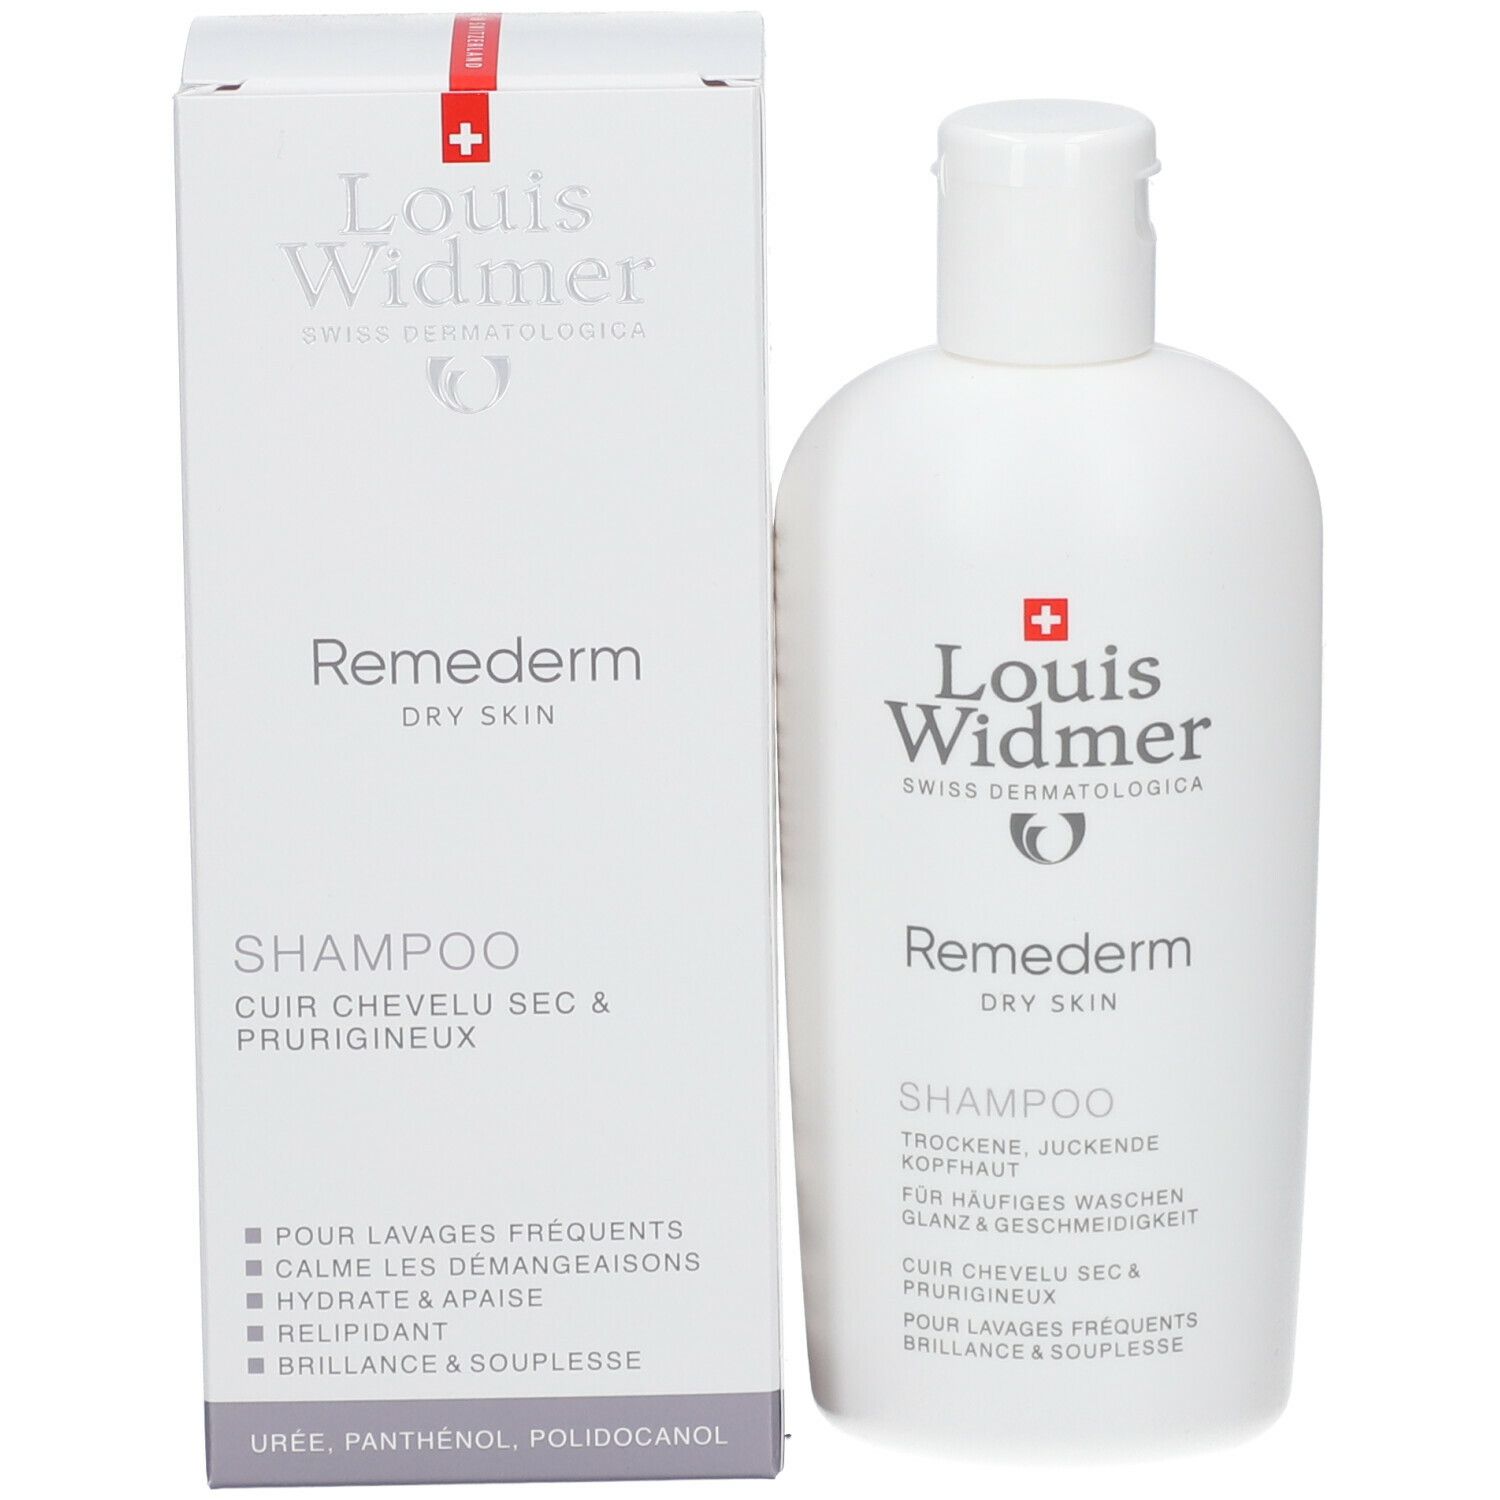 Louis Widmer Remederm Shampoo légèrement parfumé